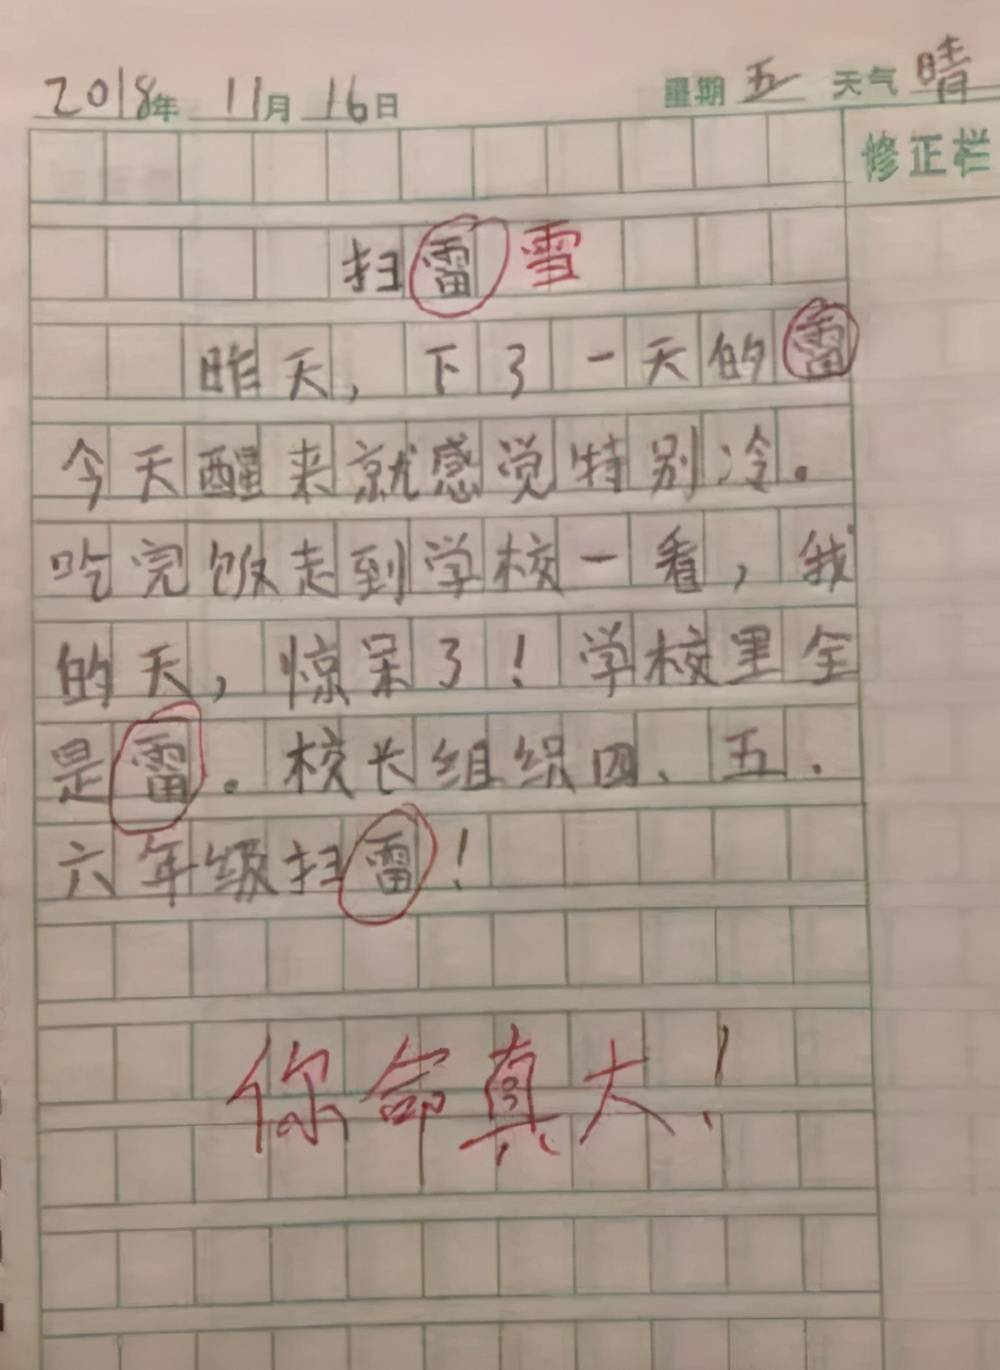 小学生日记黄叔叔来我家玩标点符号不规范老师的批语亮了